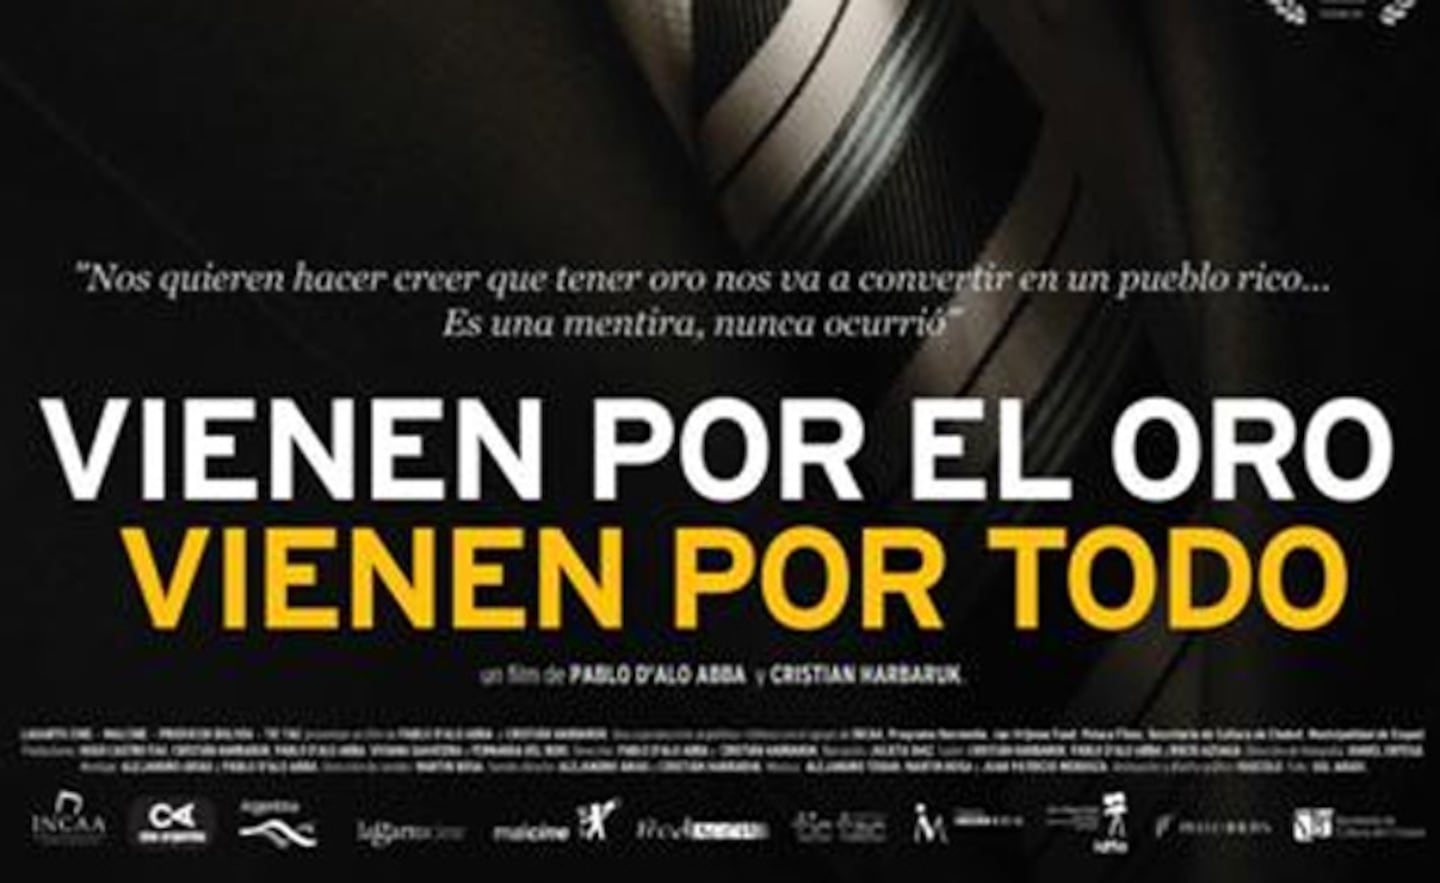 Ciudad.com te invita al cine: Vienen por el oro, vienen por todocinecine